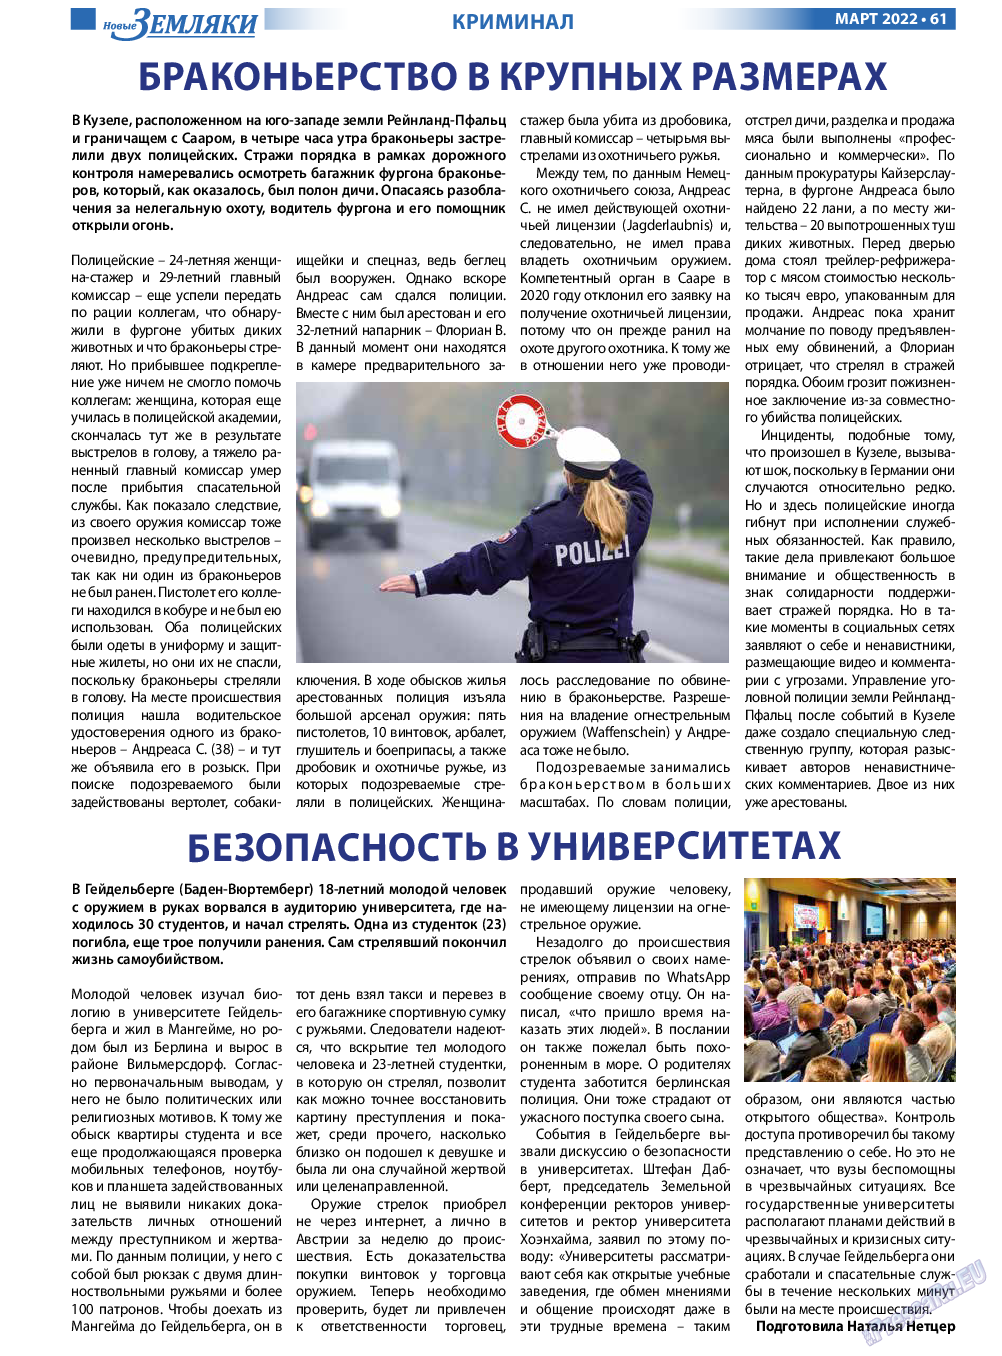 Новые Земляки, газета. 2022 №3 стр.61